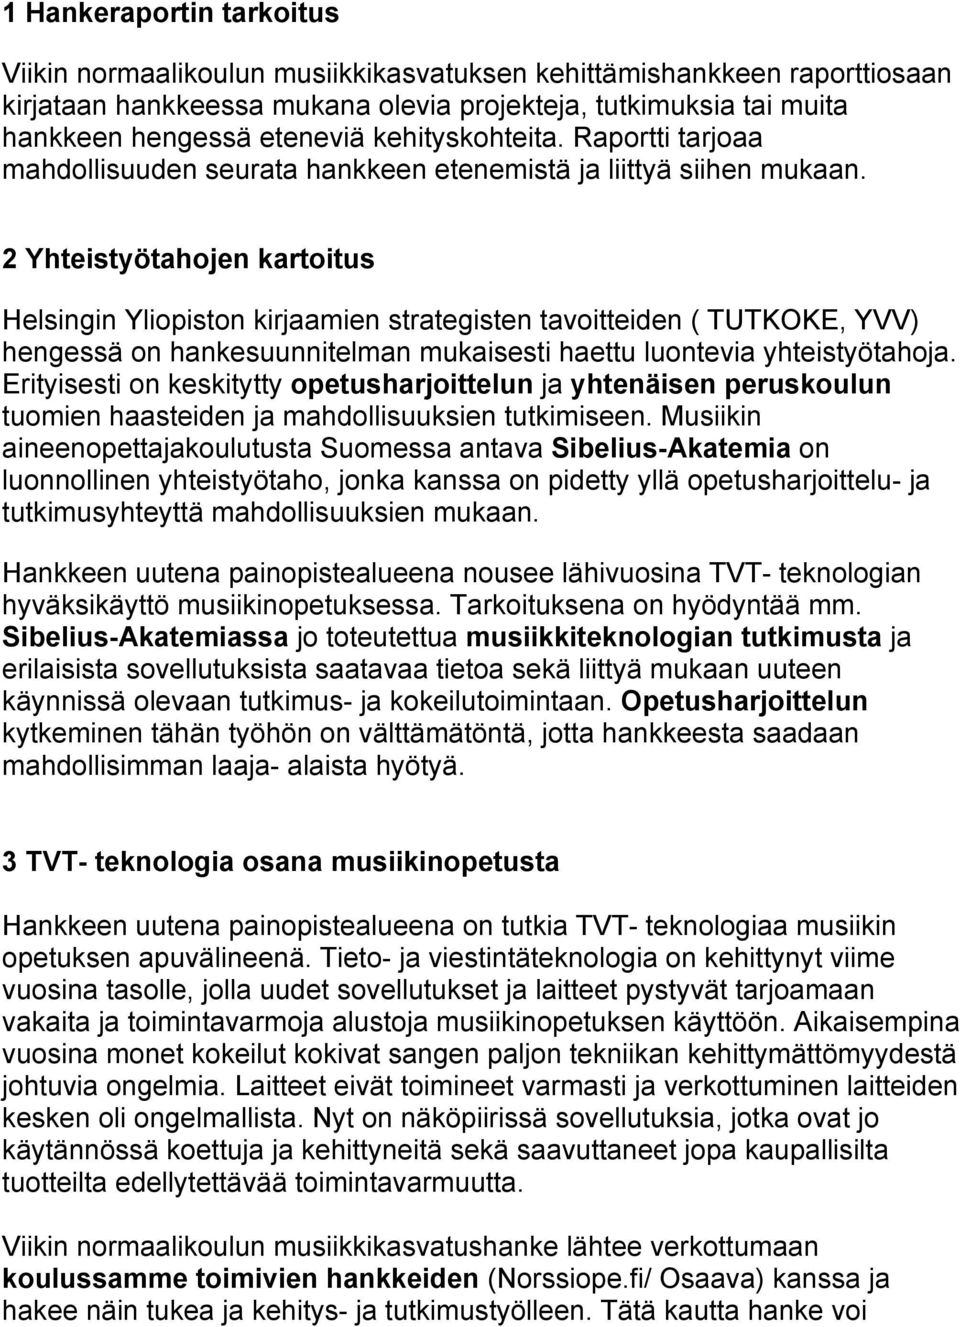 2 Yhteistyötahojen kartoitus Helsingin Yliopiston kirjaamien strategisten tavoitteiden ( TUTKOKE, YVV) hengessä on hankesuunnitelman mukaisesti haettu luontevia yhteistyötahoja.